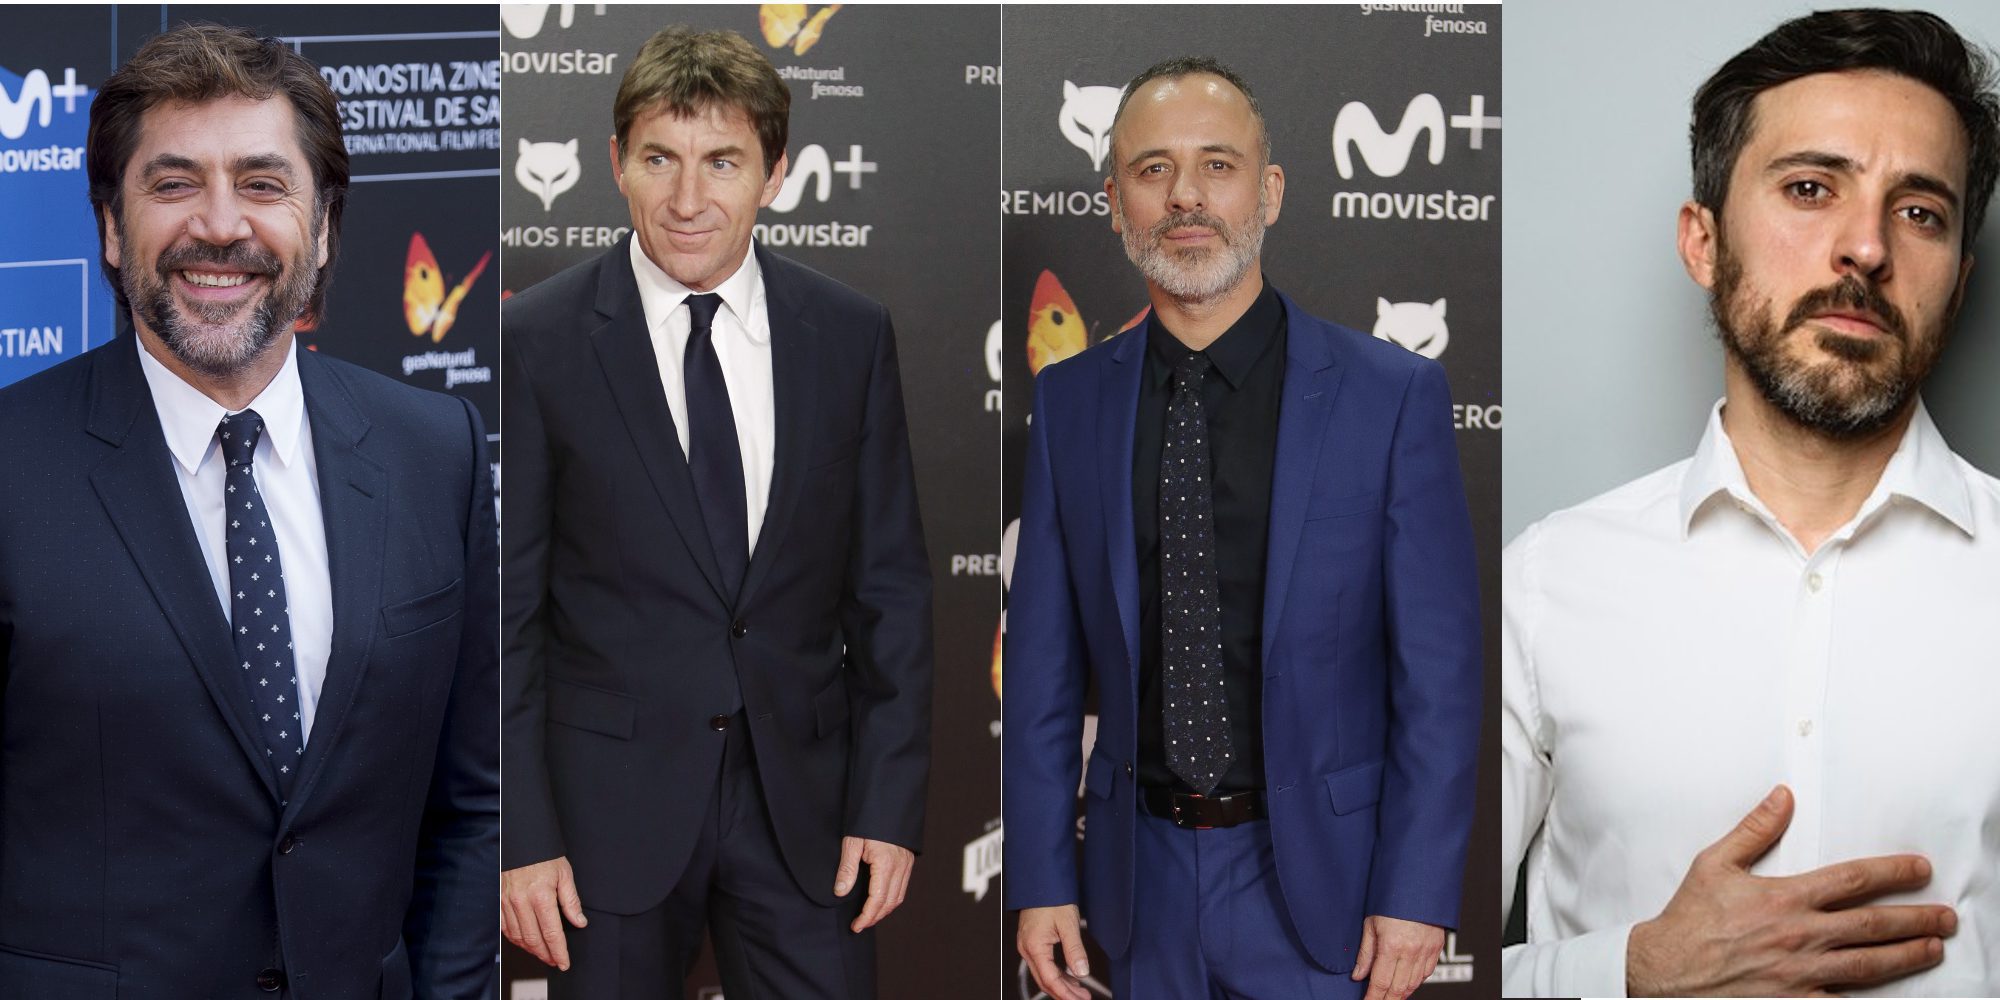 Javier Gutiérrez, Antonio de la Torre, Javier Bardem y Andrés Gertrúdix ¿quién ganará el Goya al Mejor Actor?